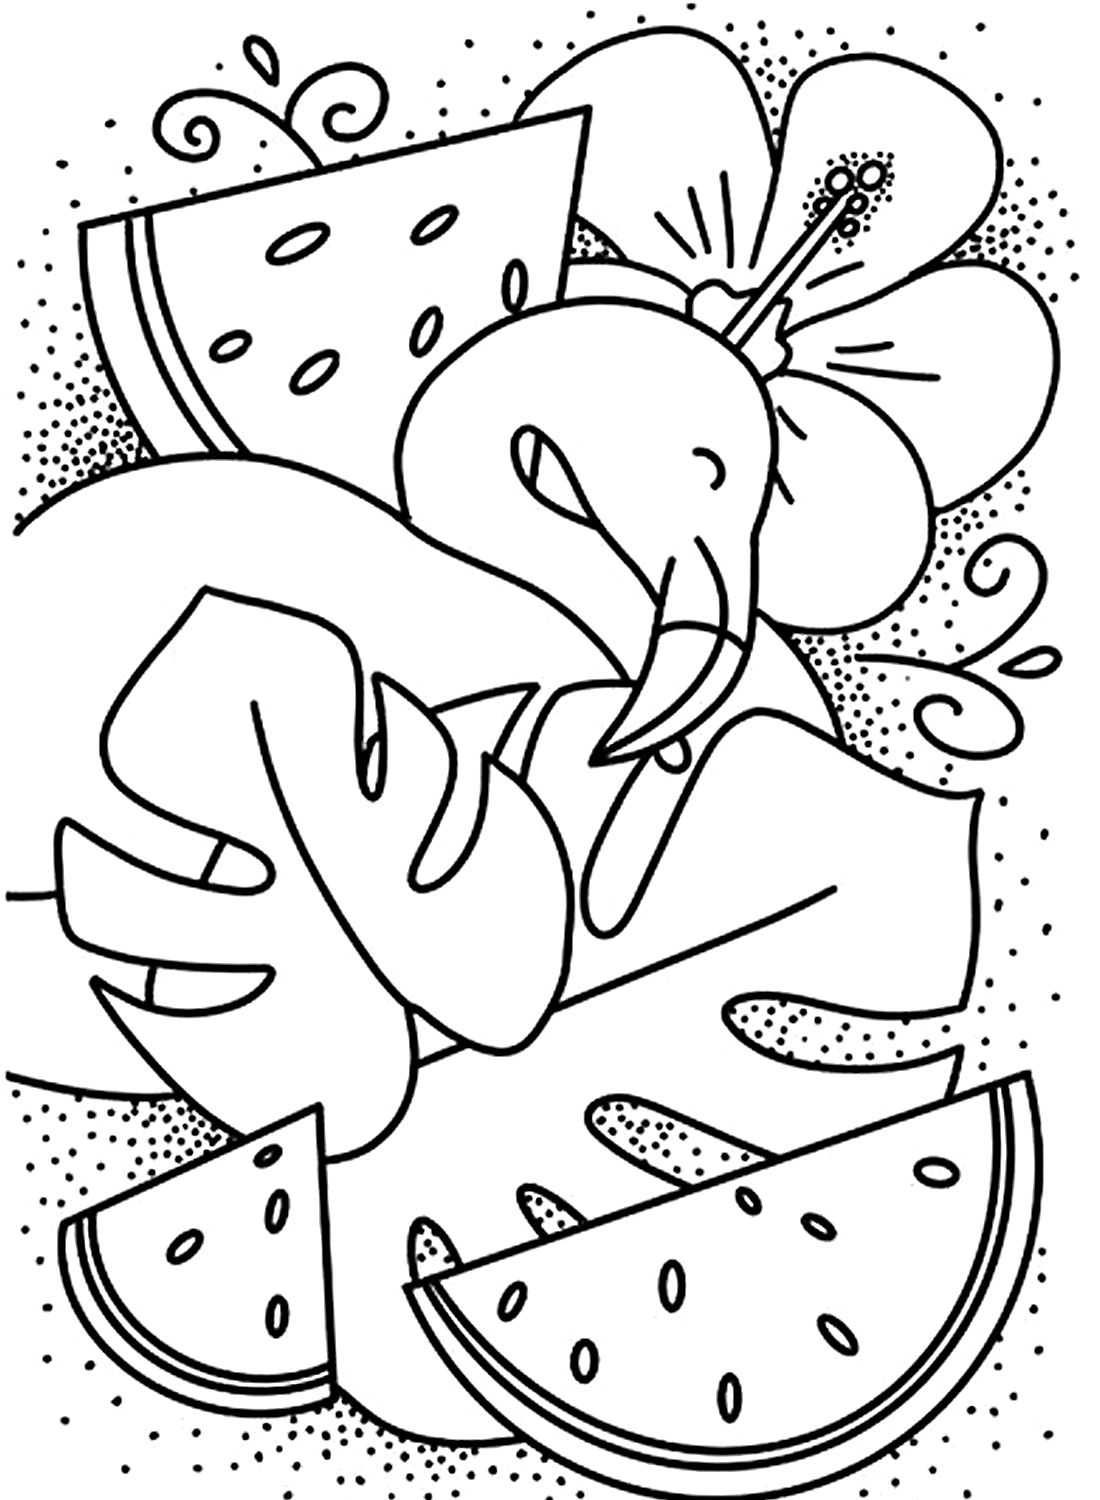 صورة البطيخ فلامنغو الاستوائية من فلامنغو